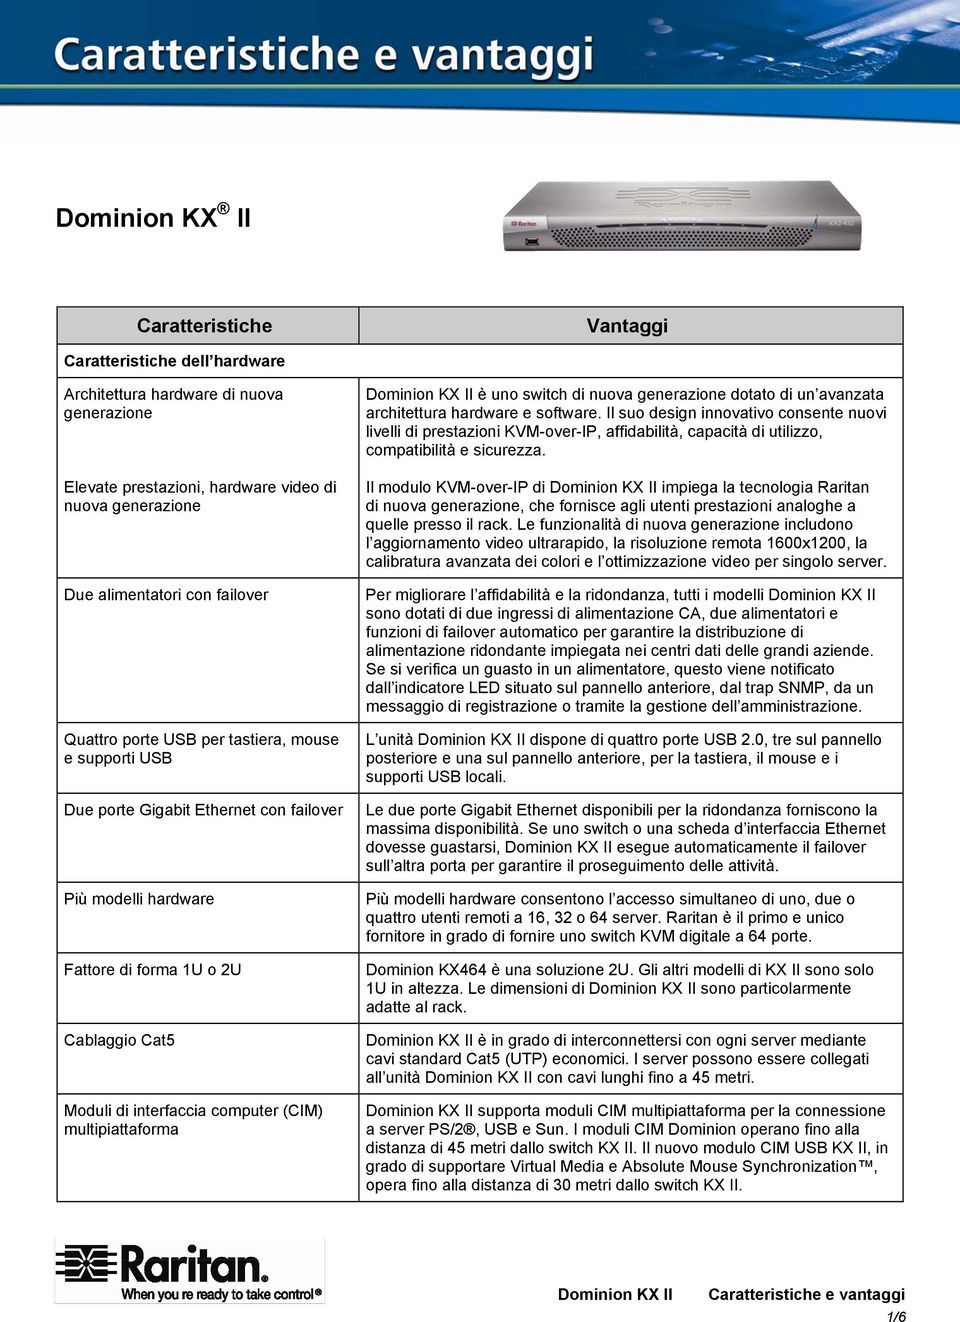 Dominion KX II è uno switch di nuova generazione dotato di un avanzata architettura hardware e software.